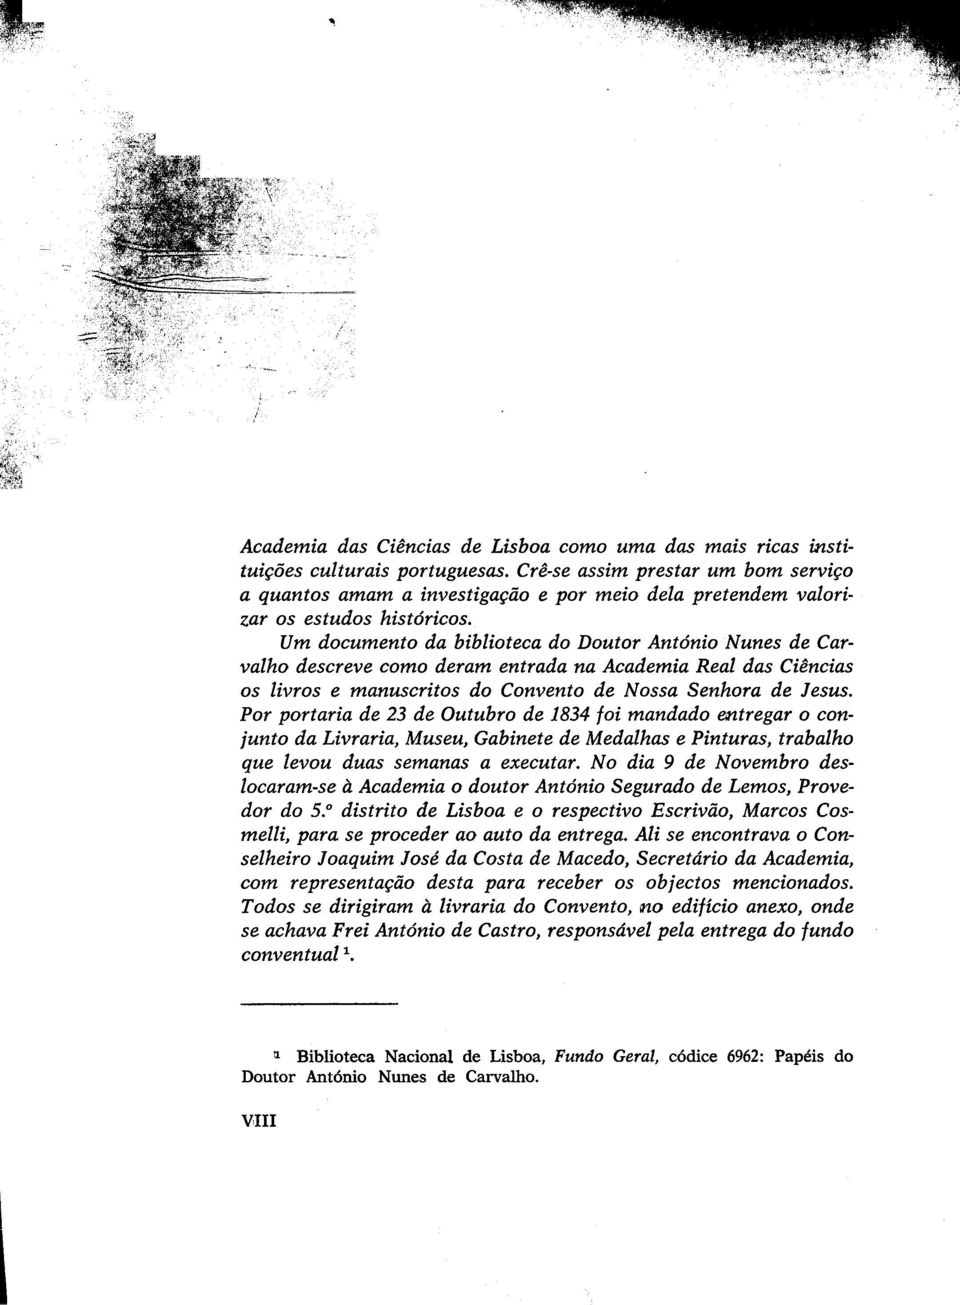 Um documento da biblioteca do Doutor António Nunes de Carvalho descreve como deram entrada na Academia Real das Ciências os livros e manuscritos do Convento de Nossa Senhora de Jesus.